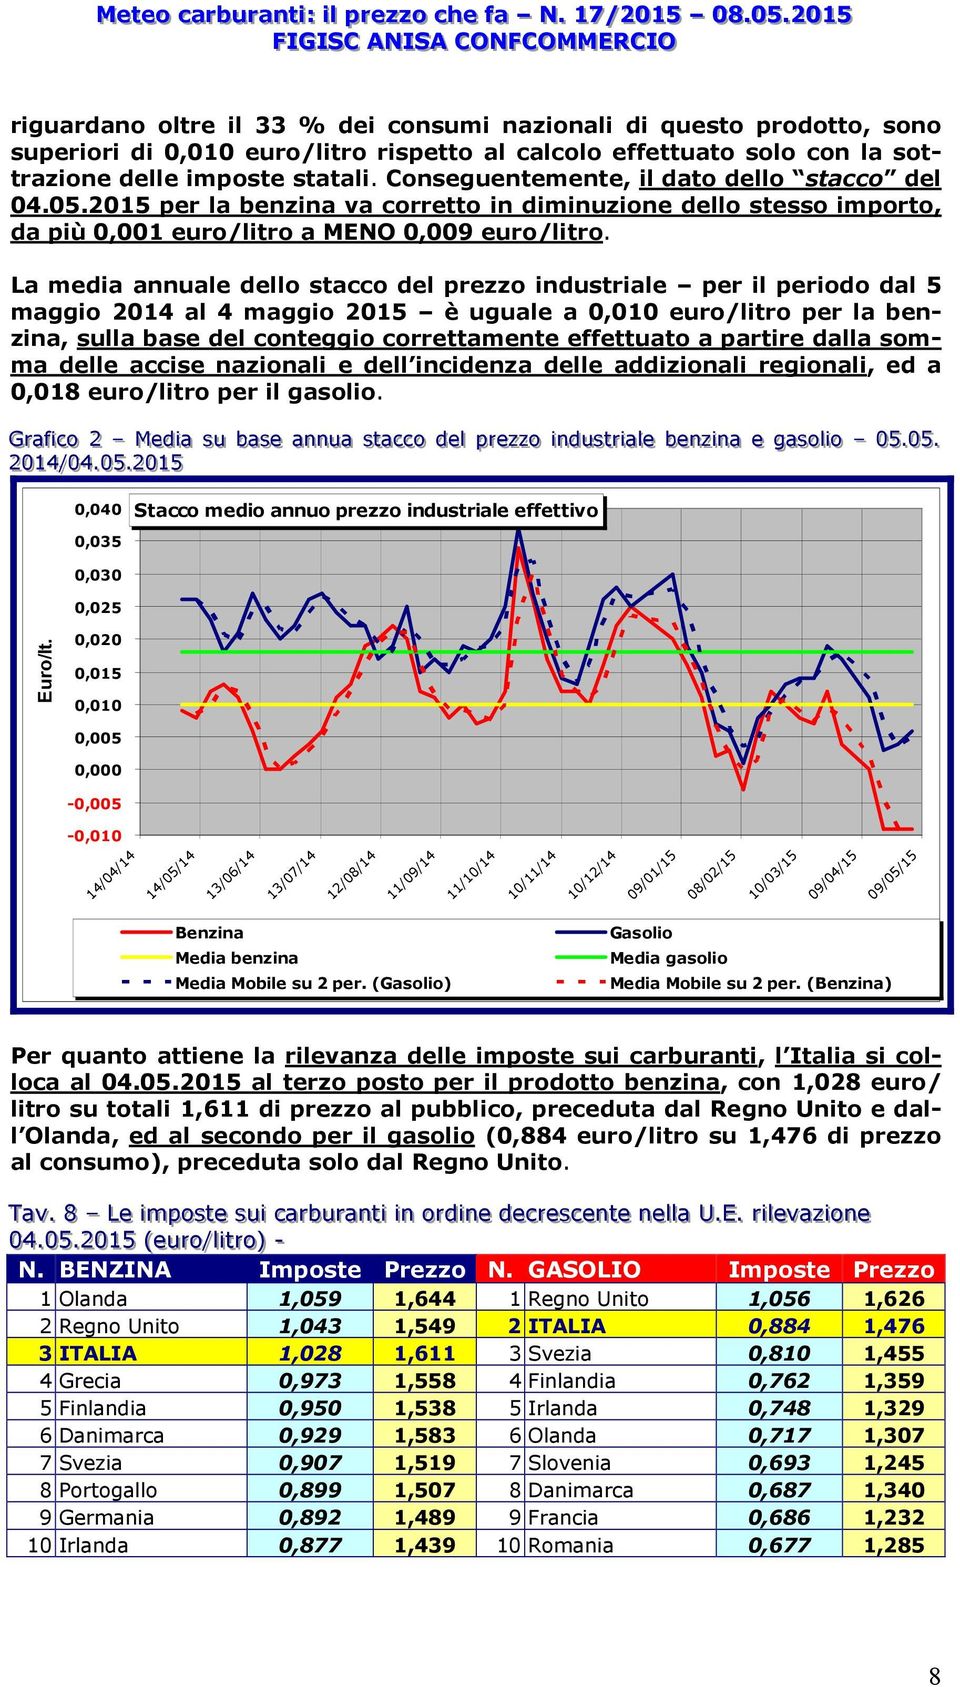 La media annuale dello del prezzo industriale per il periodo dal 5 maggio 2014 al 4 maggio 2015 è uguale a 0,010 euro/litro per la benzina, sulla base del conteggio correttamente effettuato a partire